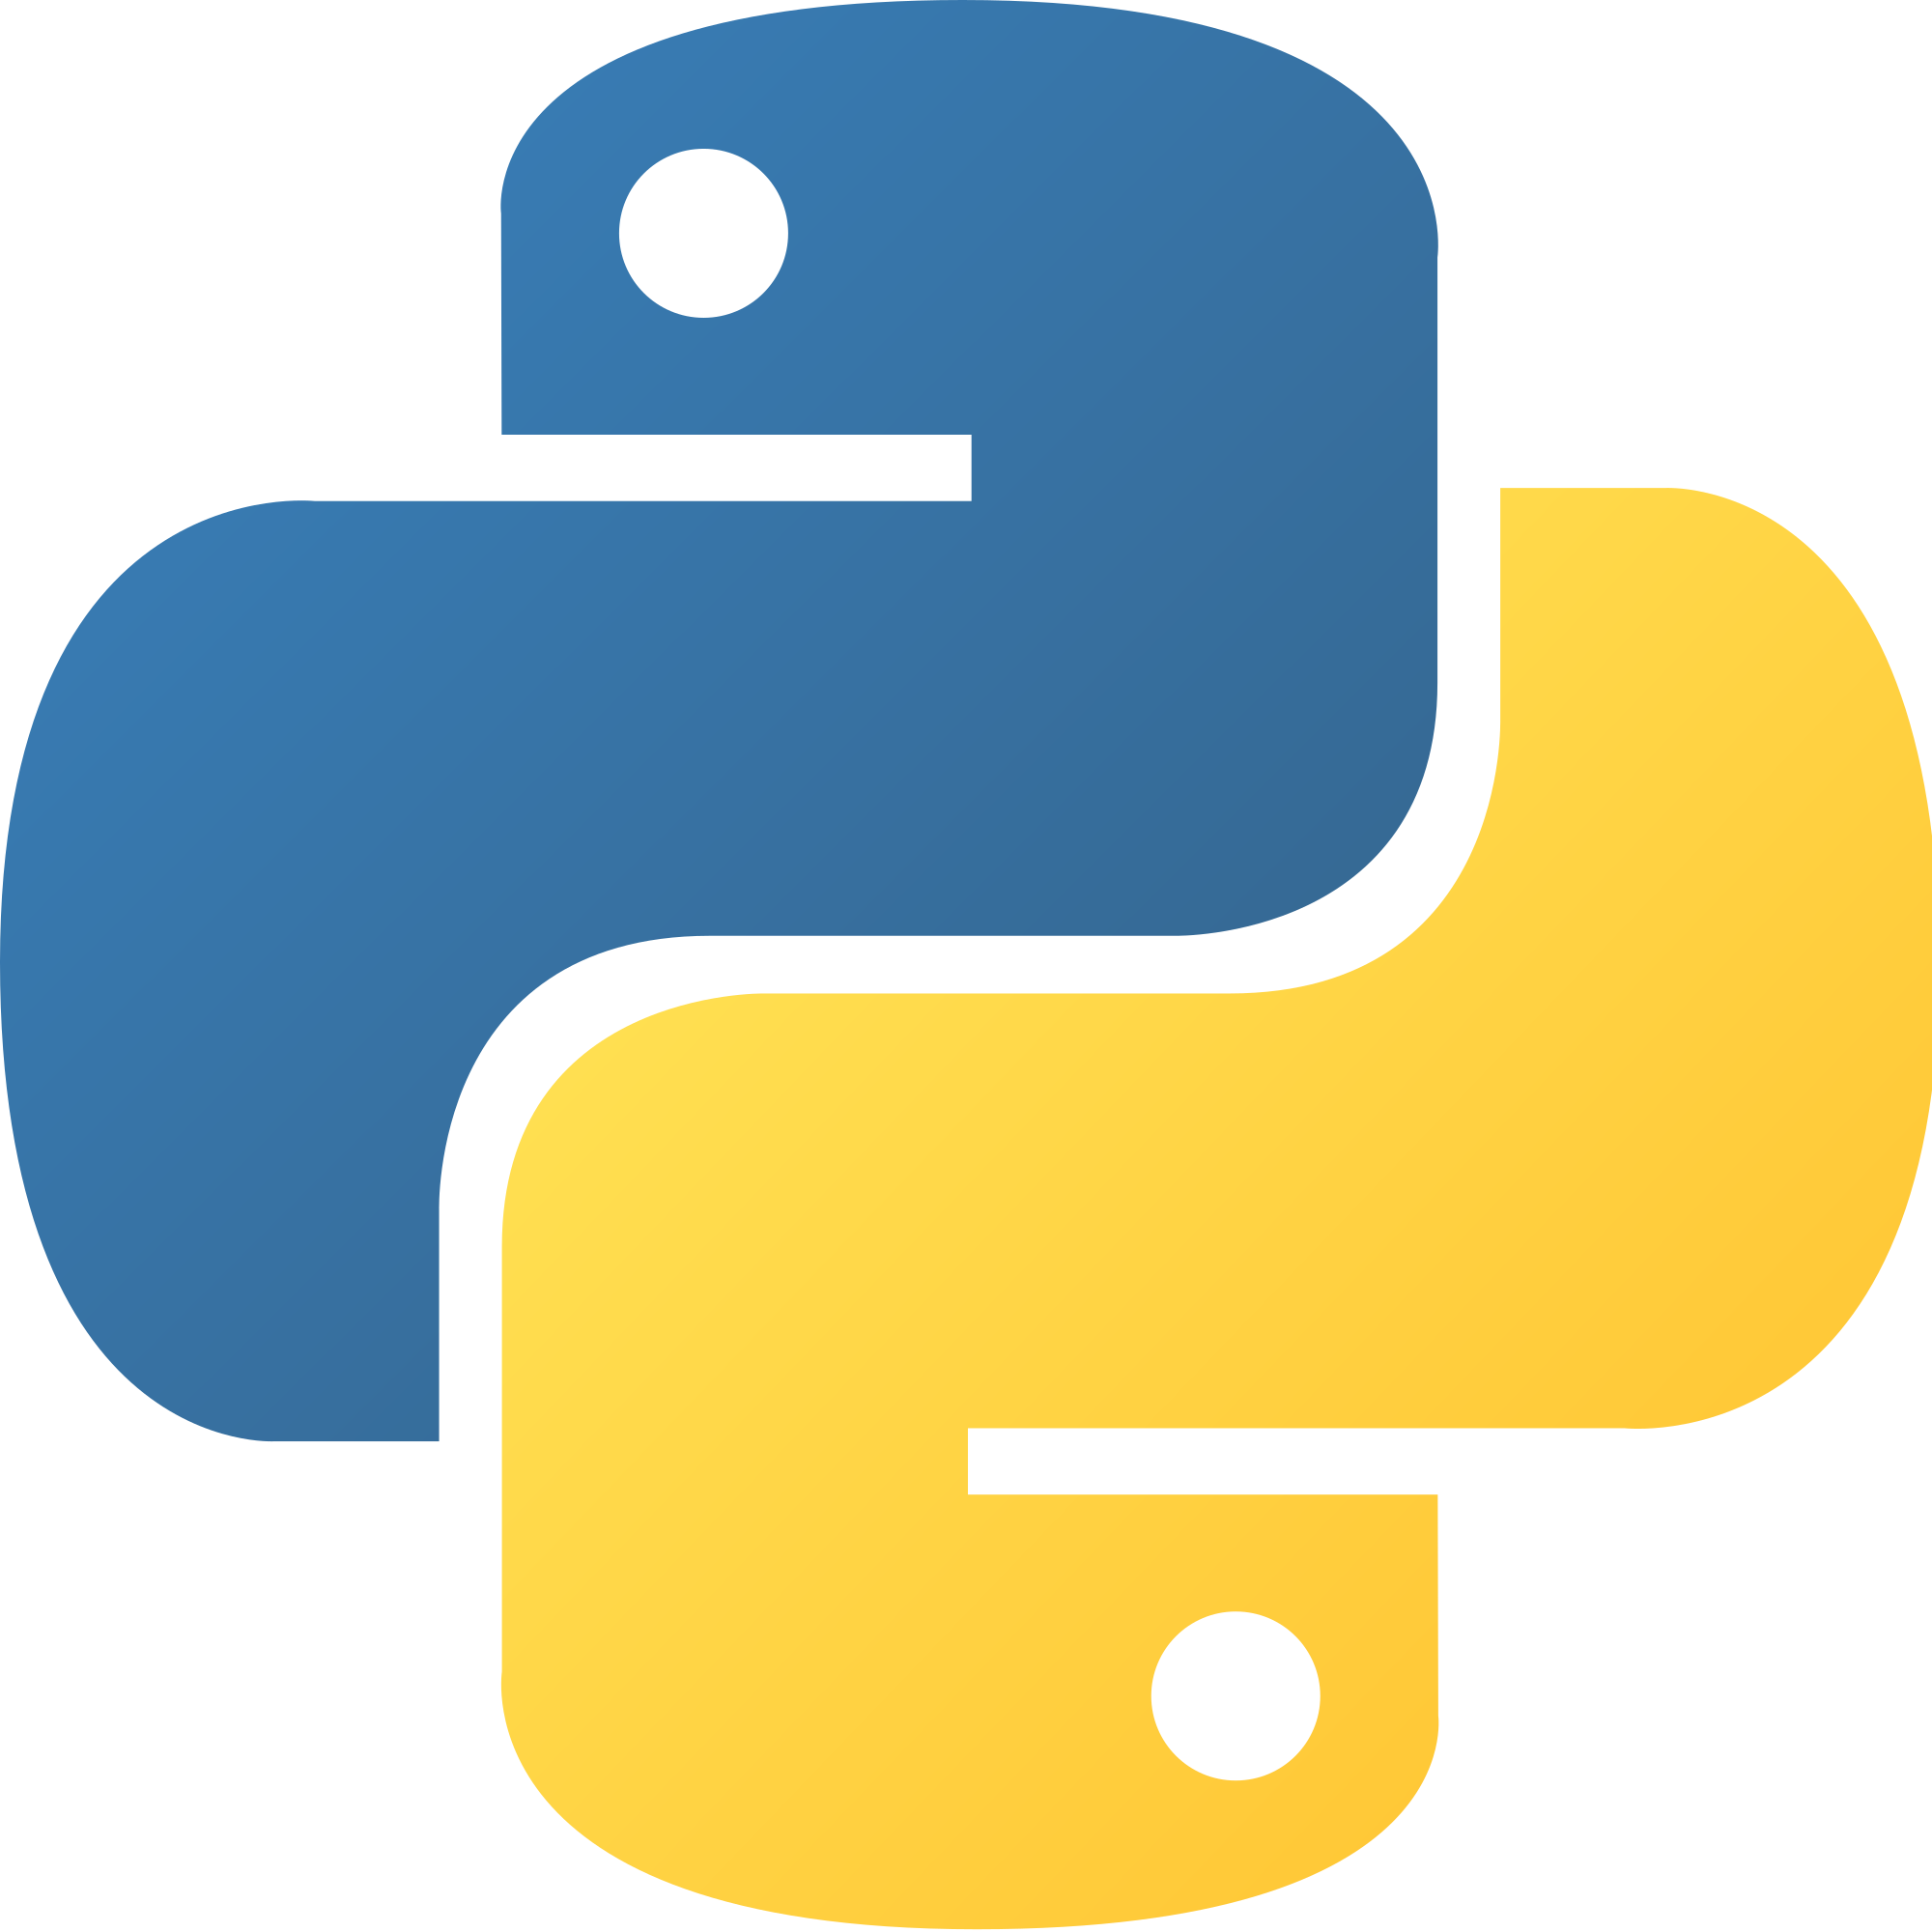 Beginners Python 3